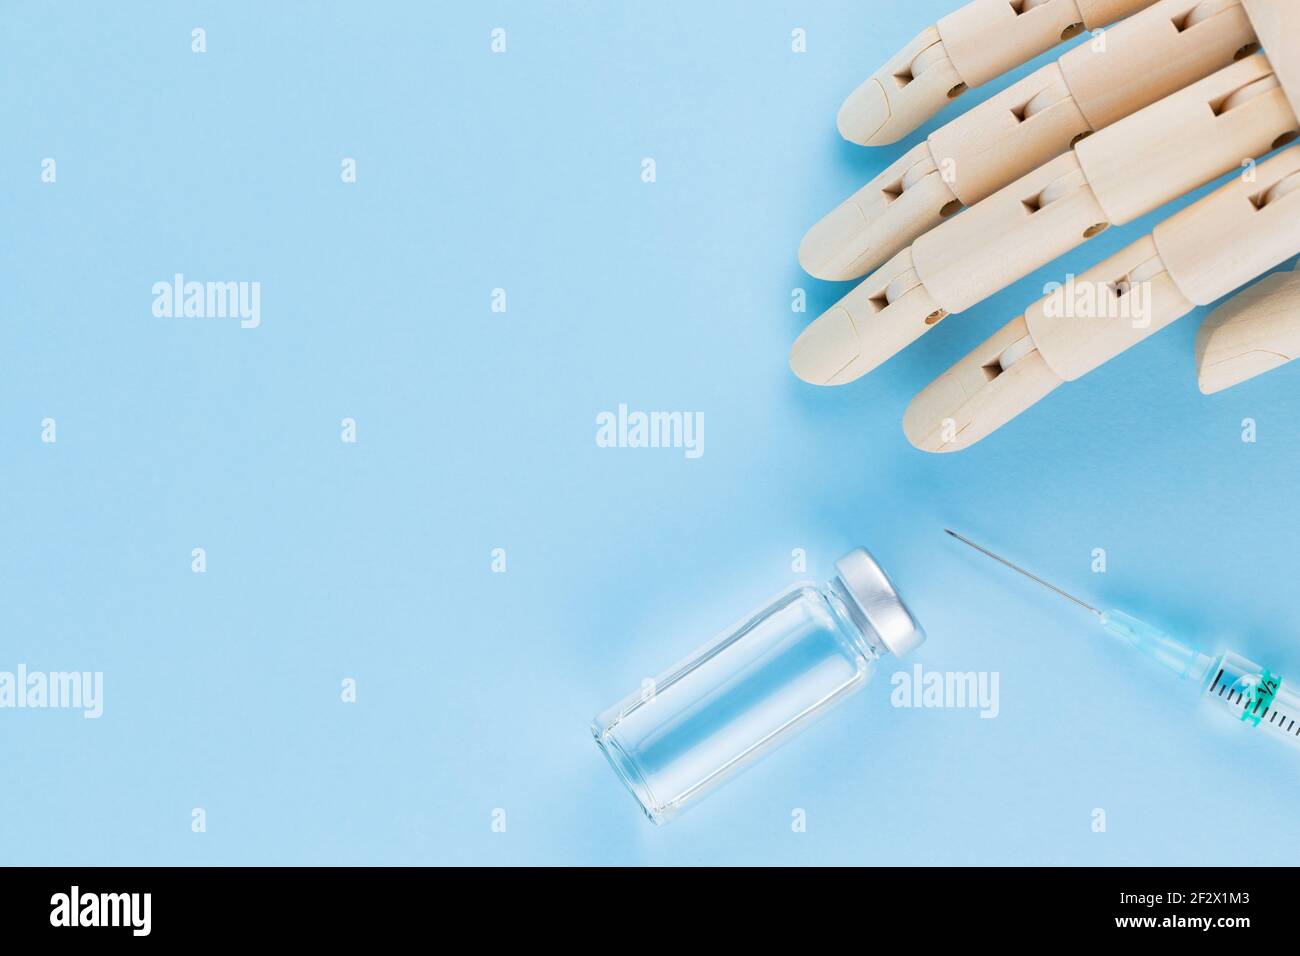 Vaccino, siringa e mano umana di legno. Fiala medica e siringa su sfondo blu. Concetto di assistenza sanitaria e prevenzione delle malattie. Vista dall'alto Foto Stock